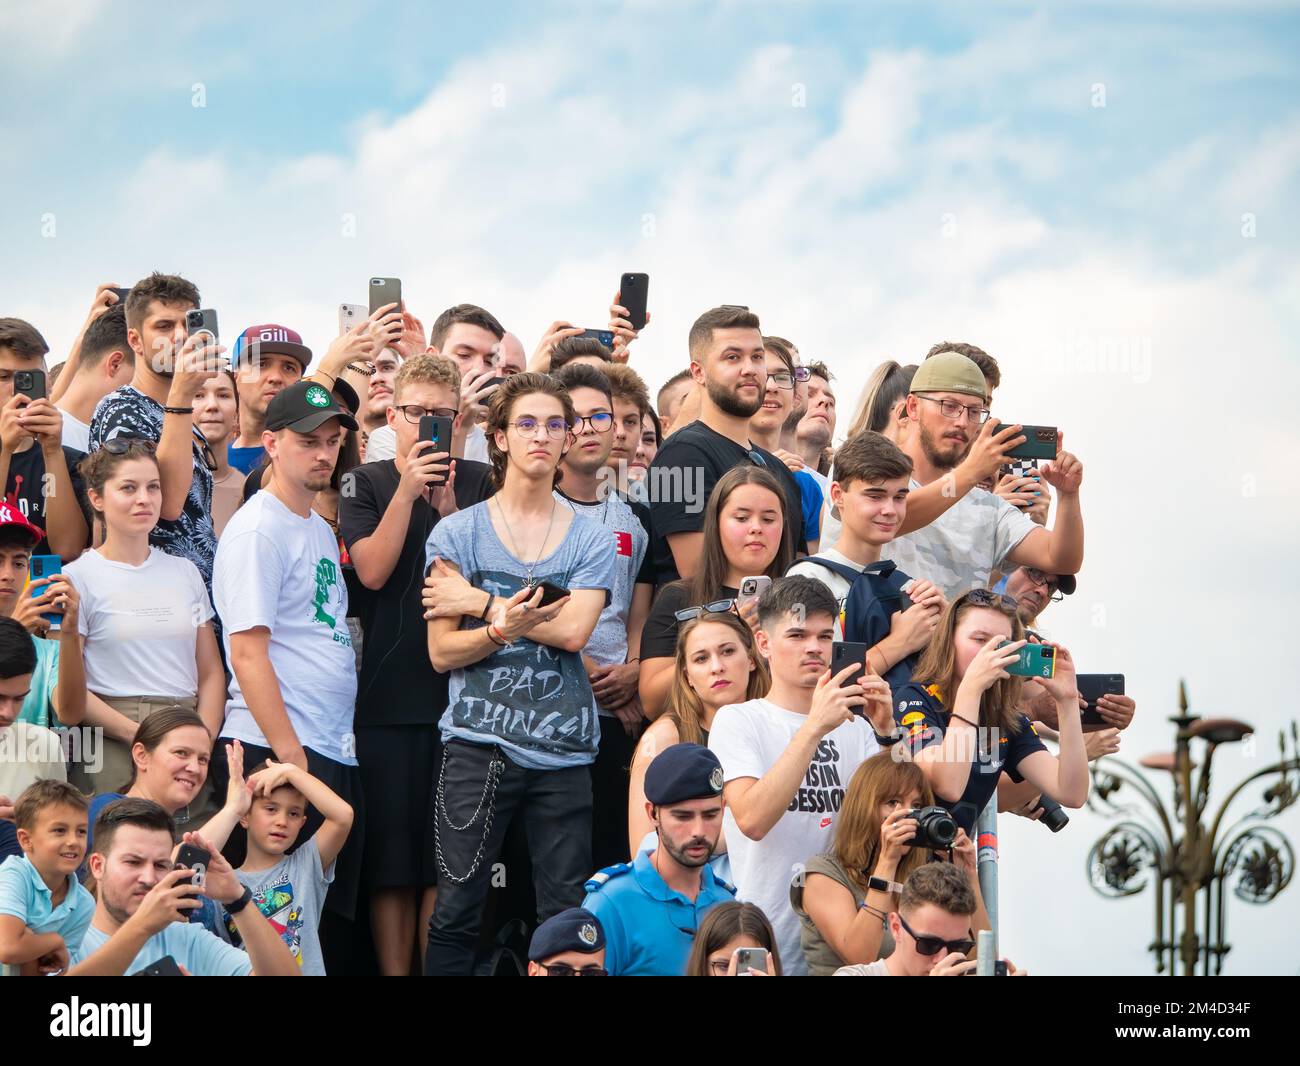 Bukarest, Rumänien - September 2022: Menschenmenge, die auf einem Festival oder einer Sportveranstaltung Fotos und Fotos mit Smartphones macht Stockfoto